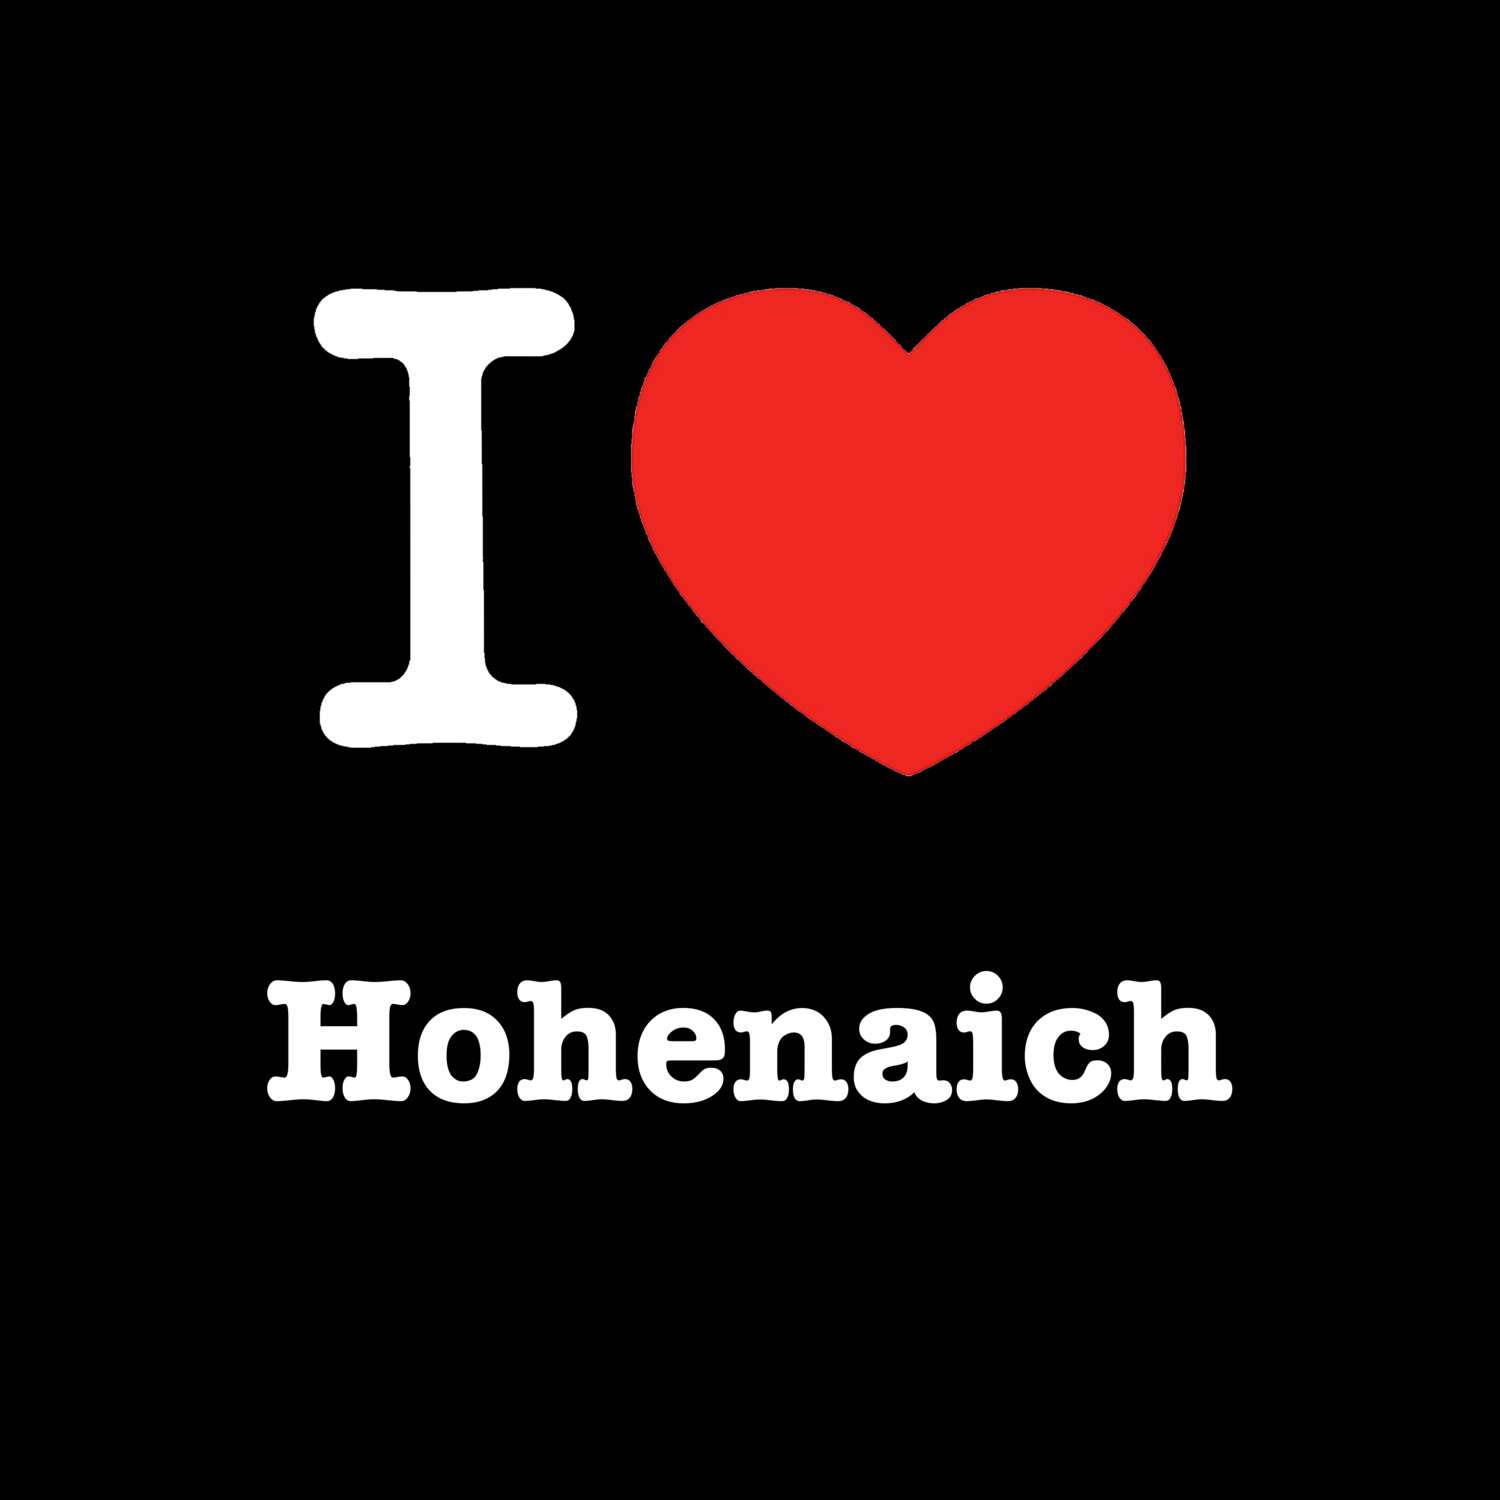 Hohenaich T-Shirt »I love«